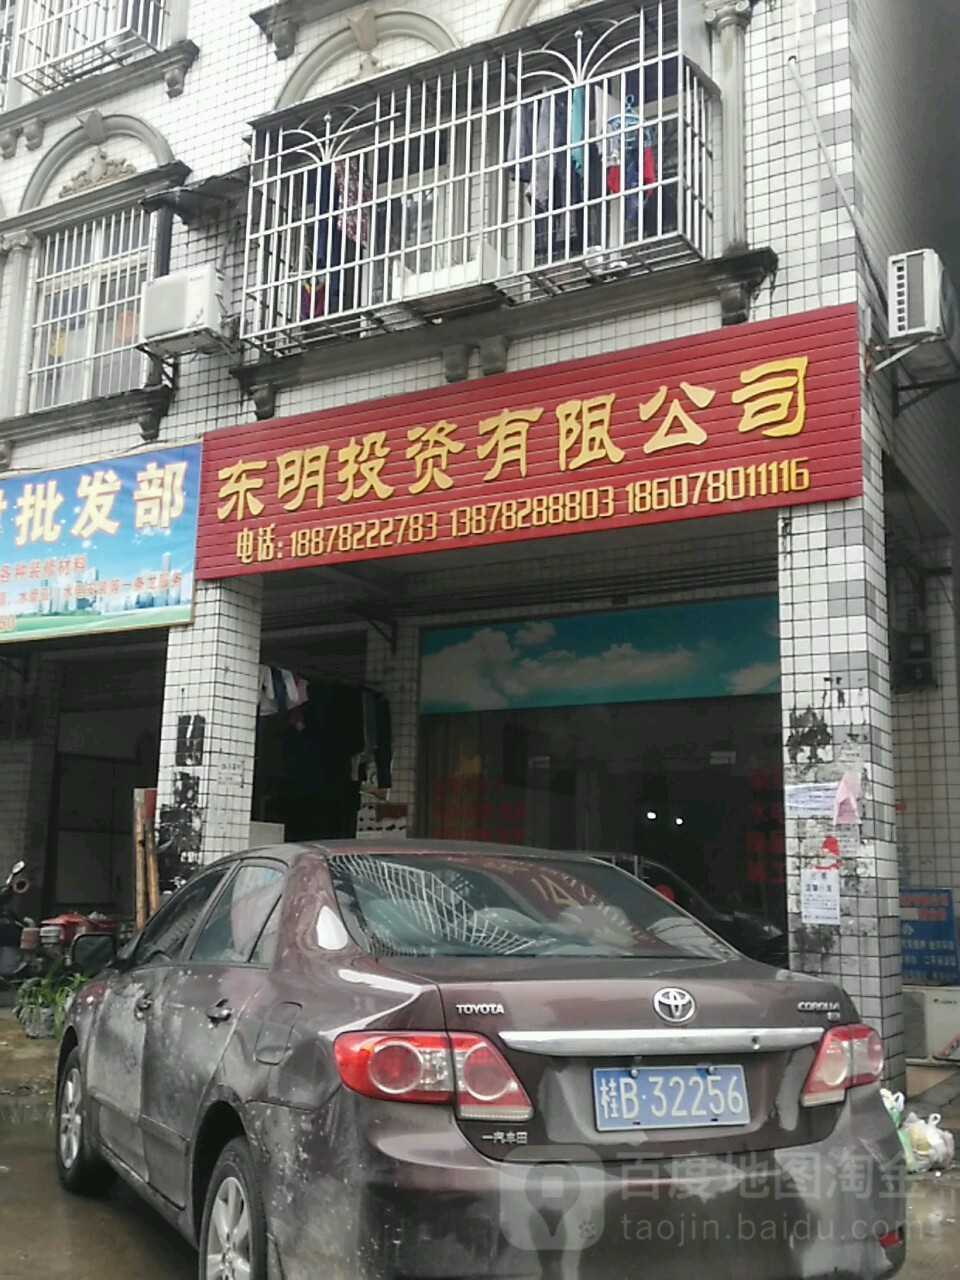 東明投資有限公司(江濱商貿城店)